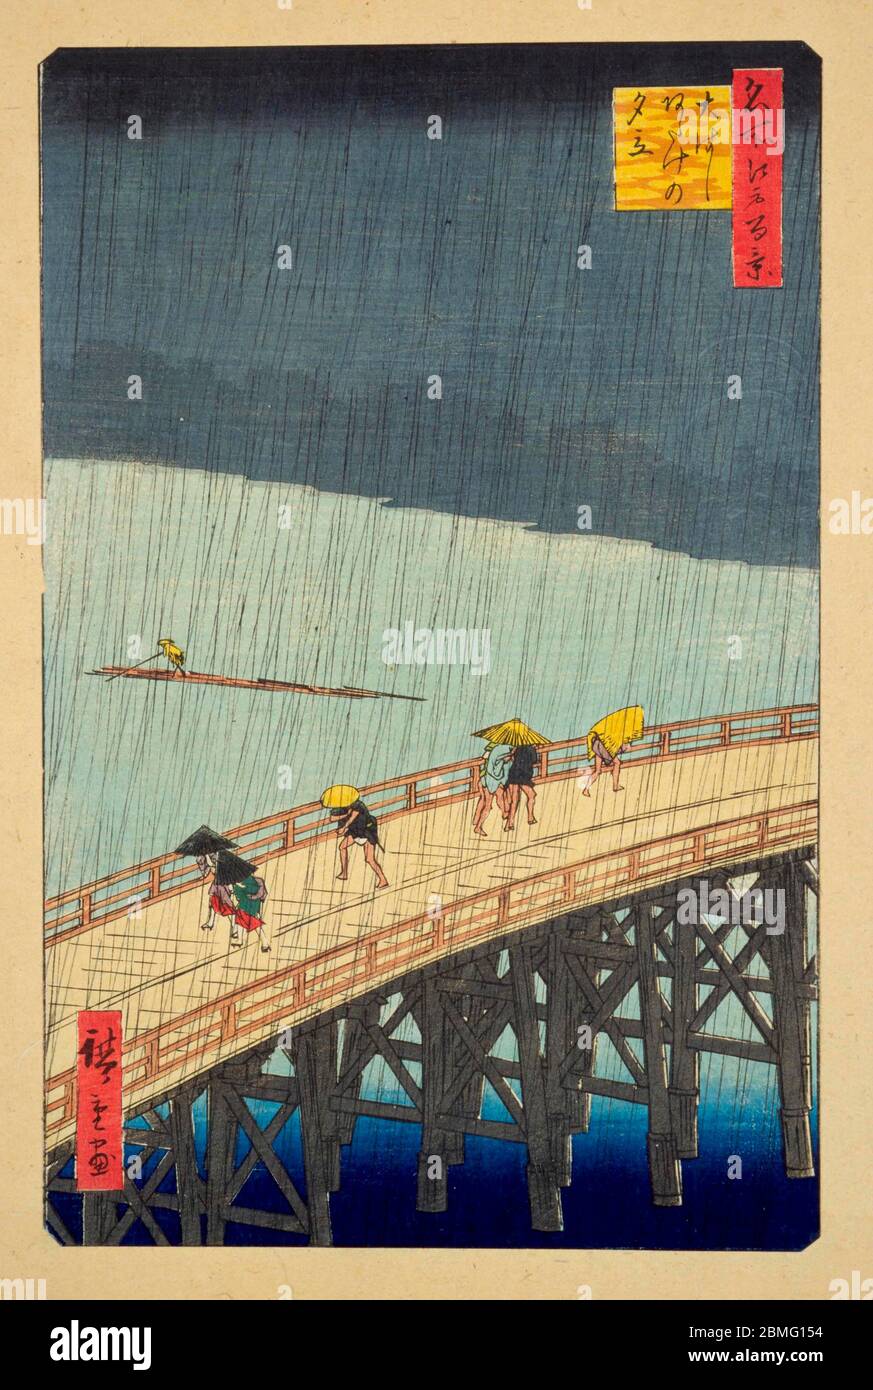 [ 1850 Japon - Pont dans la pluie ] — personnes traversant le pont Shin-Ohashi à travers la rivière Sumidagawa à Edo (Tokyo actuel) pendant de fortes précipitations, 1857. L'artiste néerlandais Vincent Van Gogh a peint des copies de cet imprimé pour étudier les éléments qu'il admirait dans les gravures japonaises sur bois. Il est l'image 58 dans une centaine de vues célèbres d'Edo (名所江戸百景, Meisho Edo Hyakkei), une série créée par l'artiste ukiyoe Utagawa Hiroshige (歌川広重, 1797–1858). Titre: Douche soudaine sur le pont Shin-Ohashi et Atake (大はしあたけの夕立, Ohashi atake no yudachi) 19ième siècle vintage Ukiyoe gravure de blocs de bois. Banque D'Images